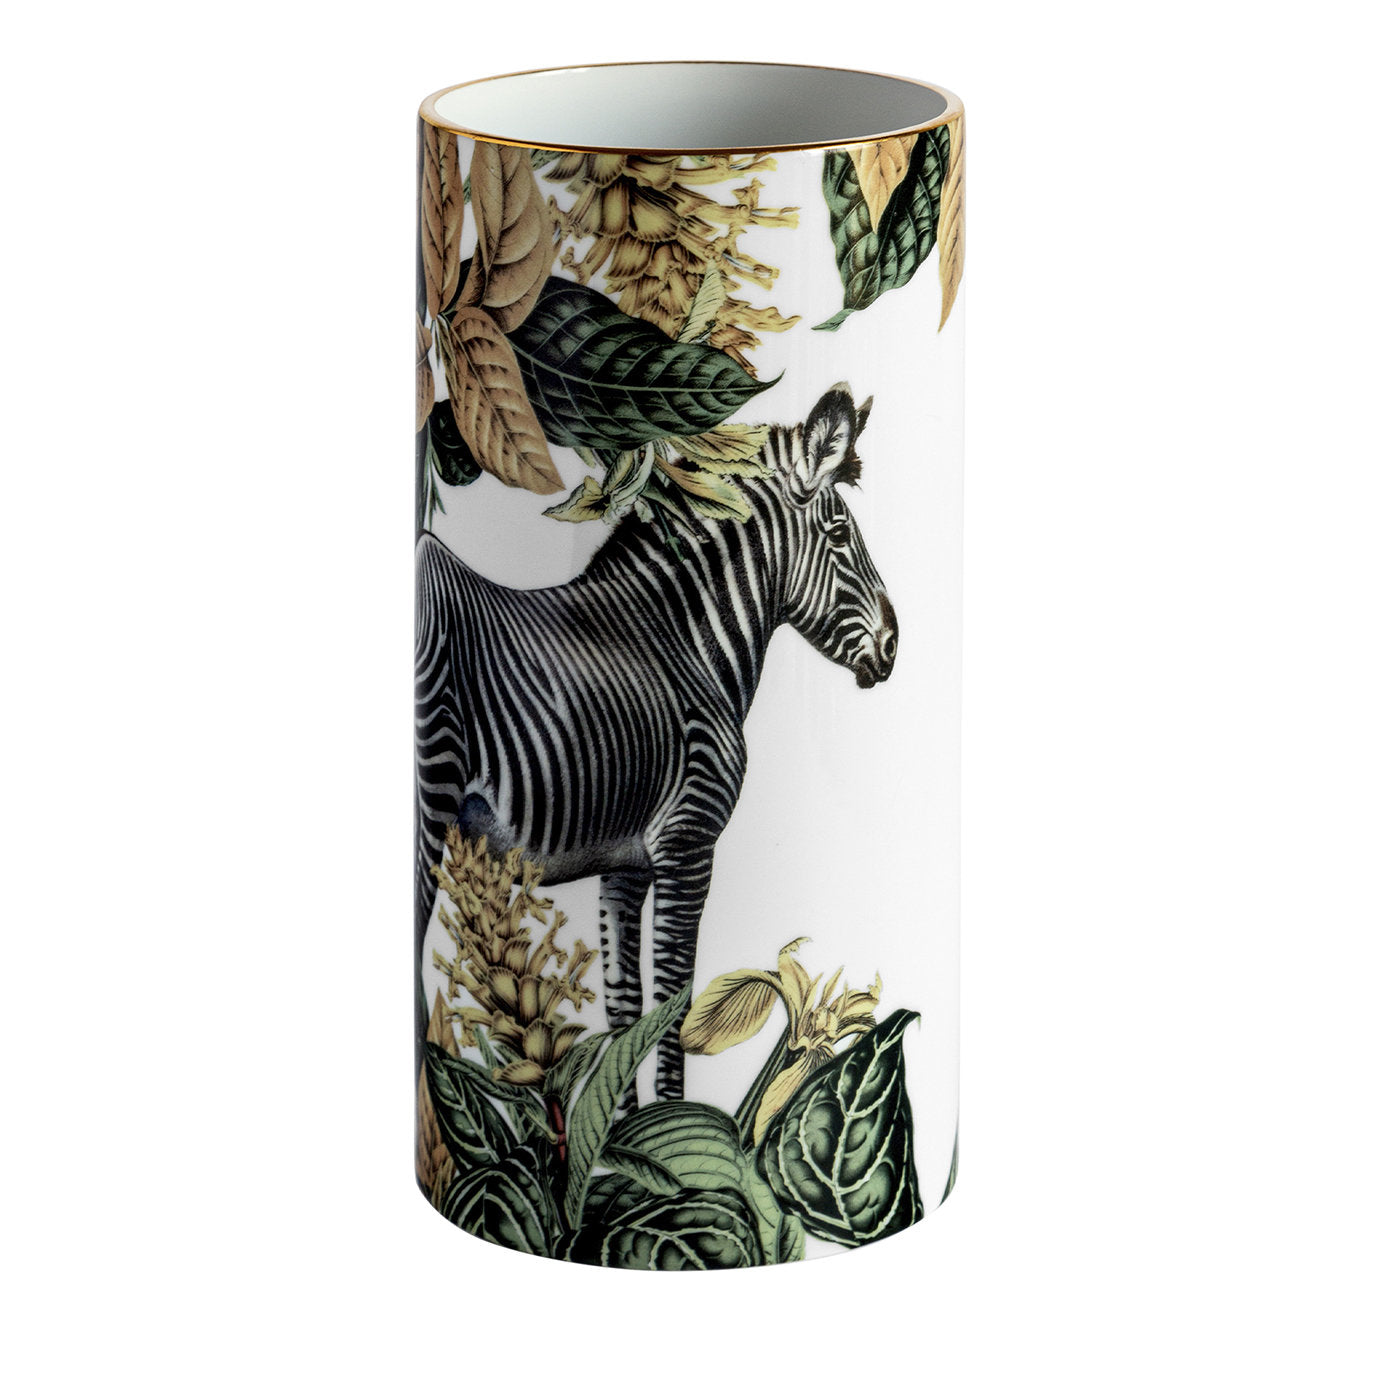 Animalia Porzellan Zylindrische Vase mit Zebra - Hauptansicht